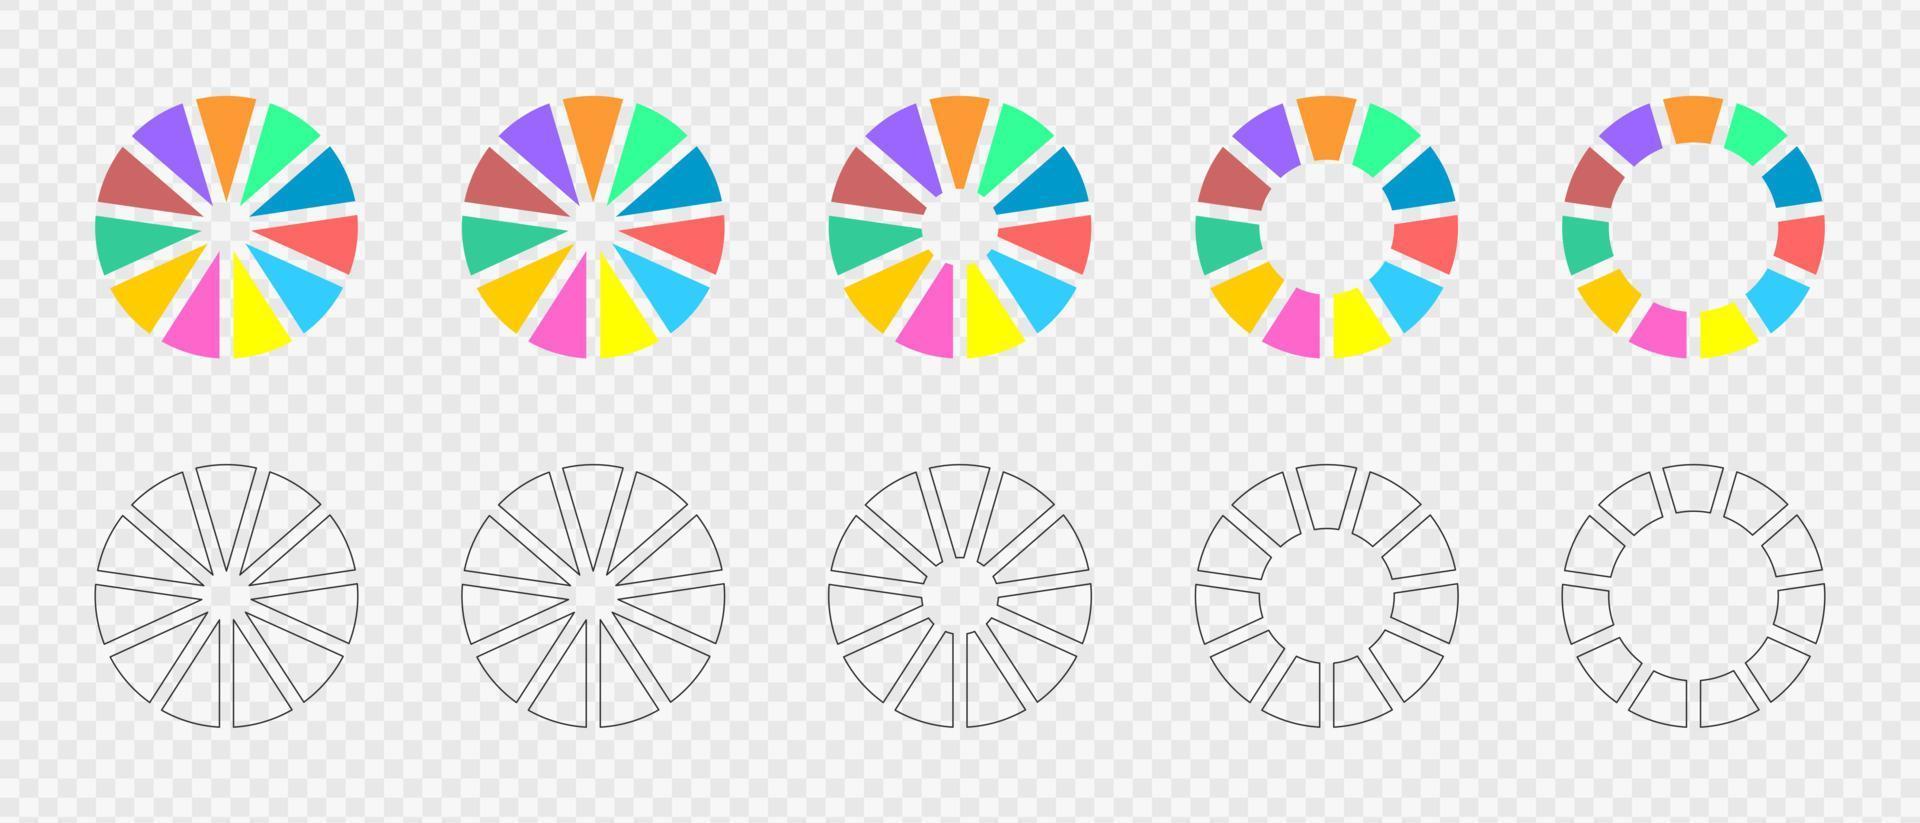 ensemble de graphiques en anneau. roues infographiques divisées en 11 sections multicolores et graphiques. diagrammes circulaires ou barres de charge. formes rondes coupées en onze parties égales. illustration de vecteur plat et contour